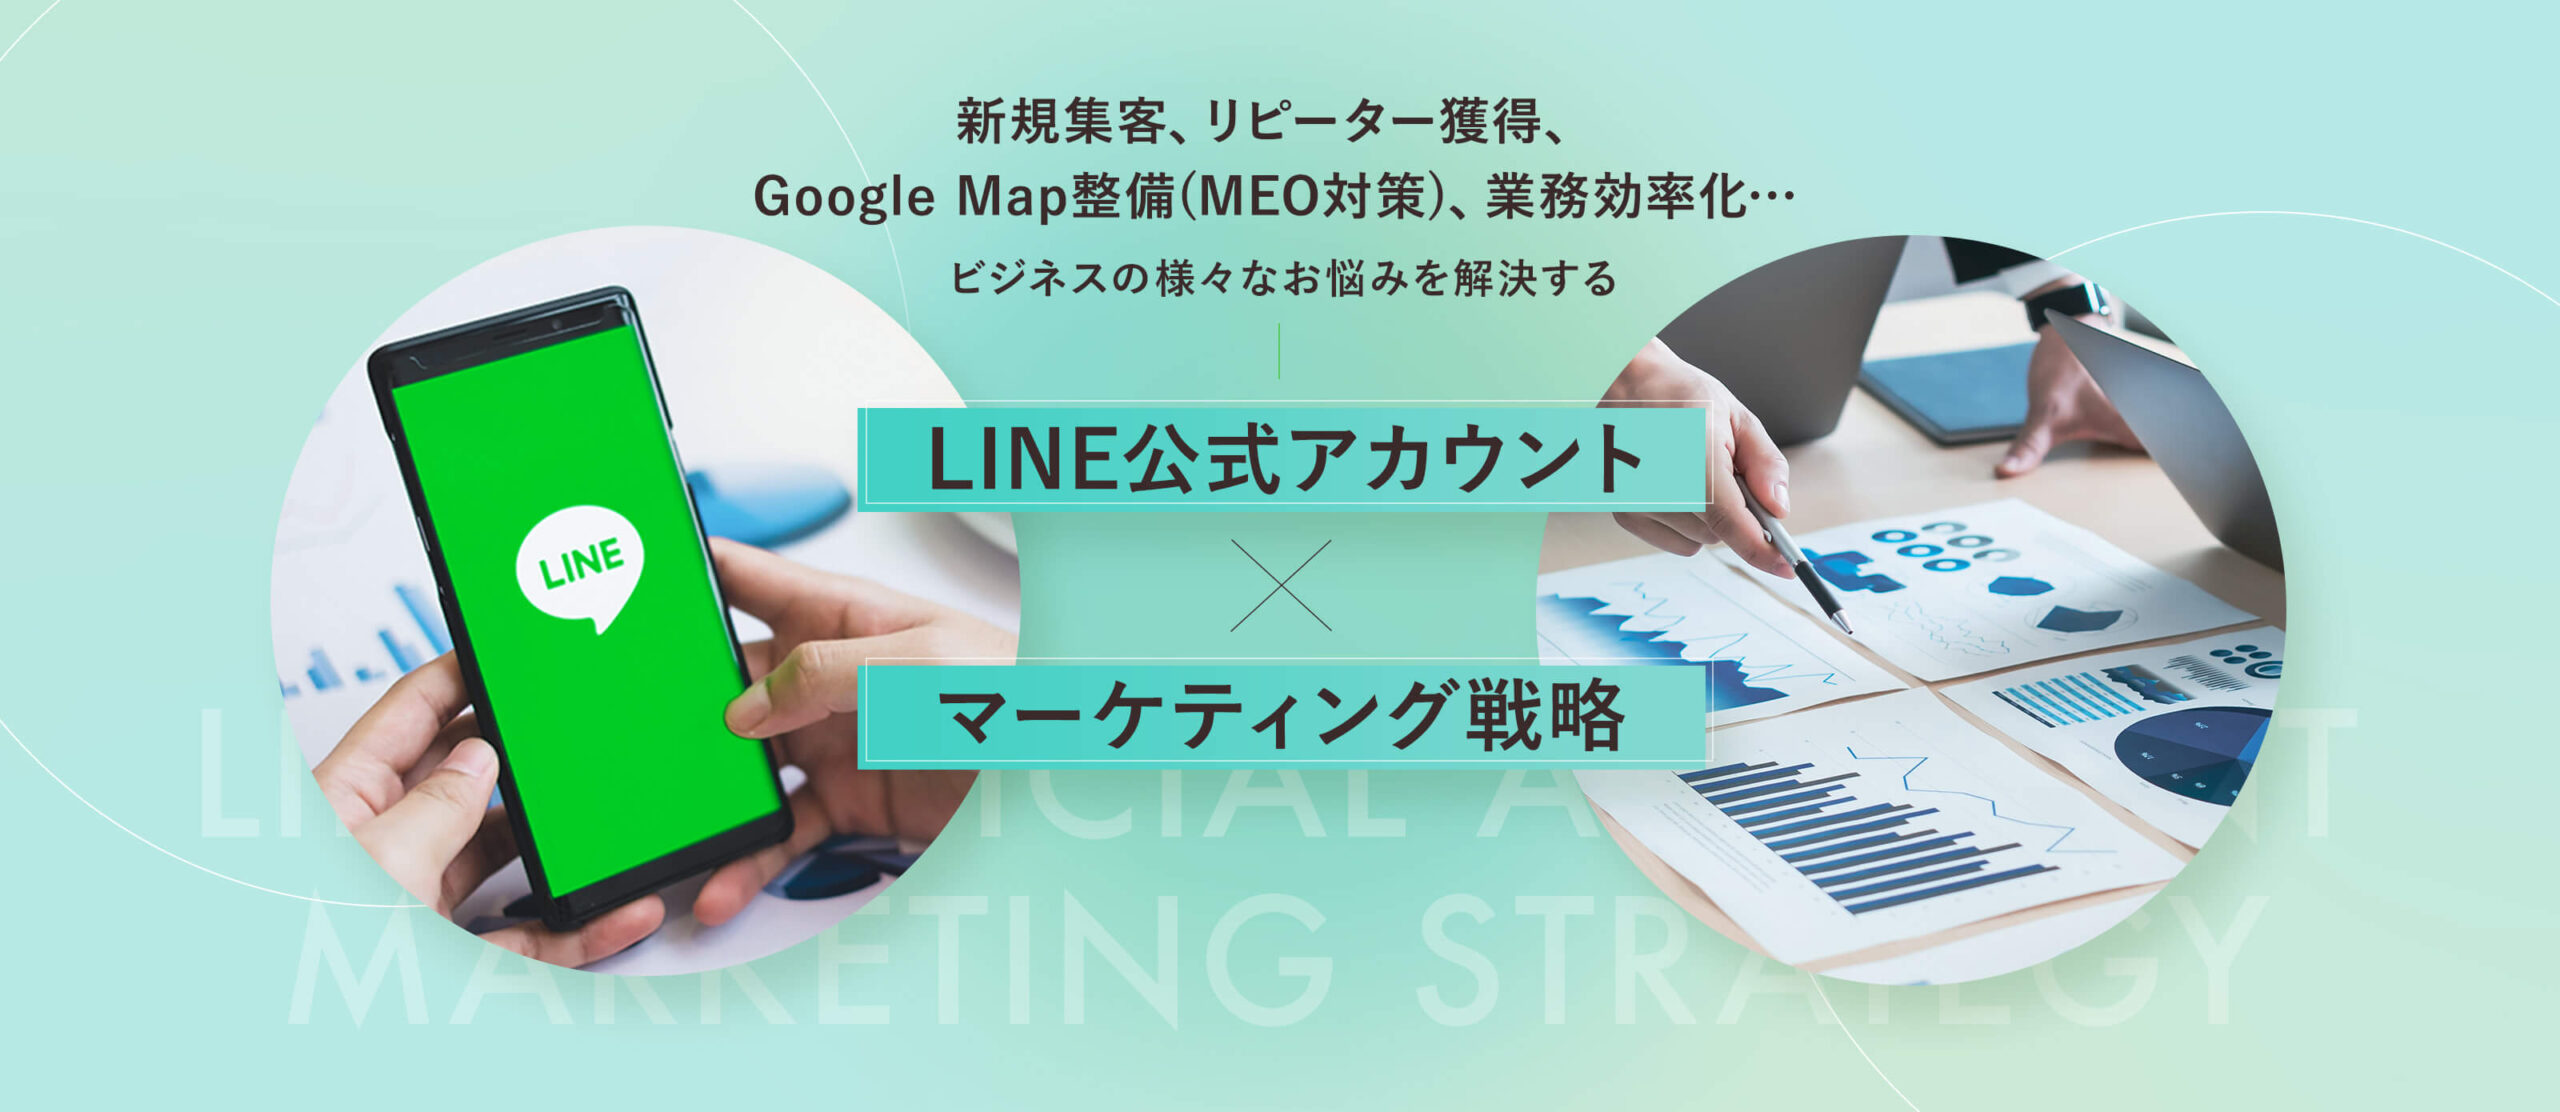 新規集客、リピーター獲得、 Google Map整備(MEO対策)、業務効率化…  ビジネスの様々なお悩みを解決するLINE公式アカウント✕マーケティング戦略